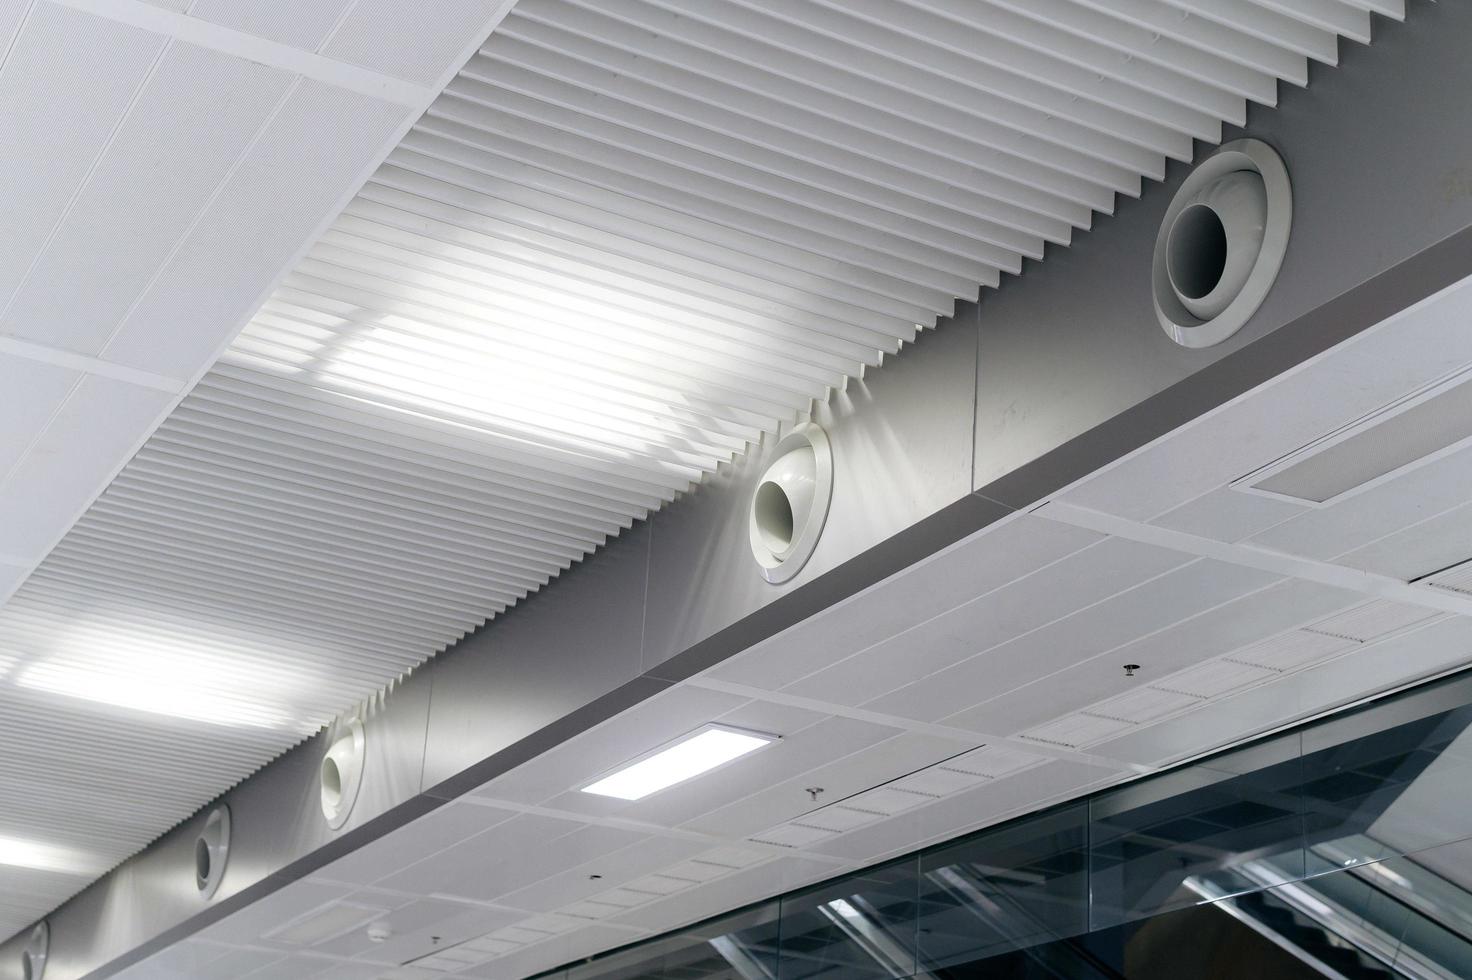 plafond gemonteerd cassette type lucht conditioner en modern lamp licht Aan wit plafond. kanaal lucht conditioner voor huis of kantoor foto